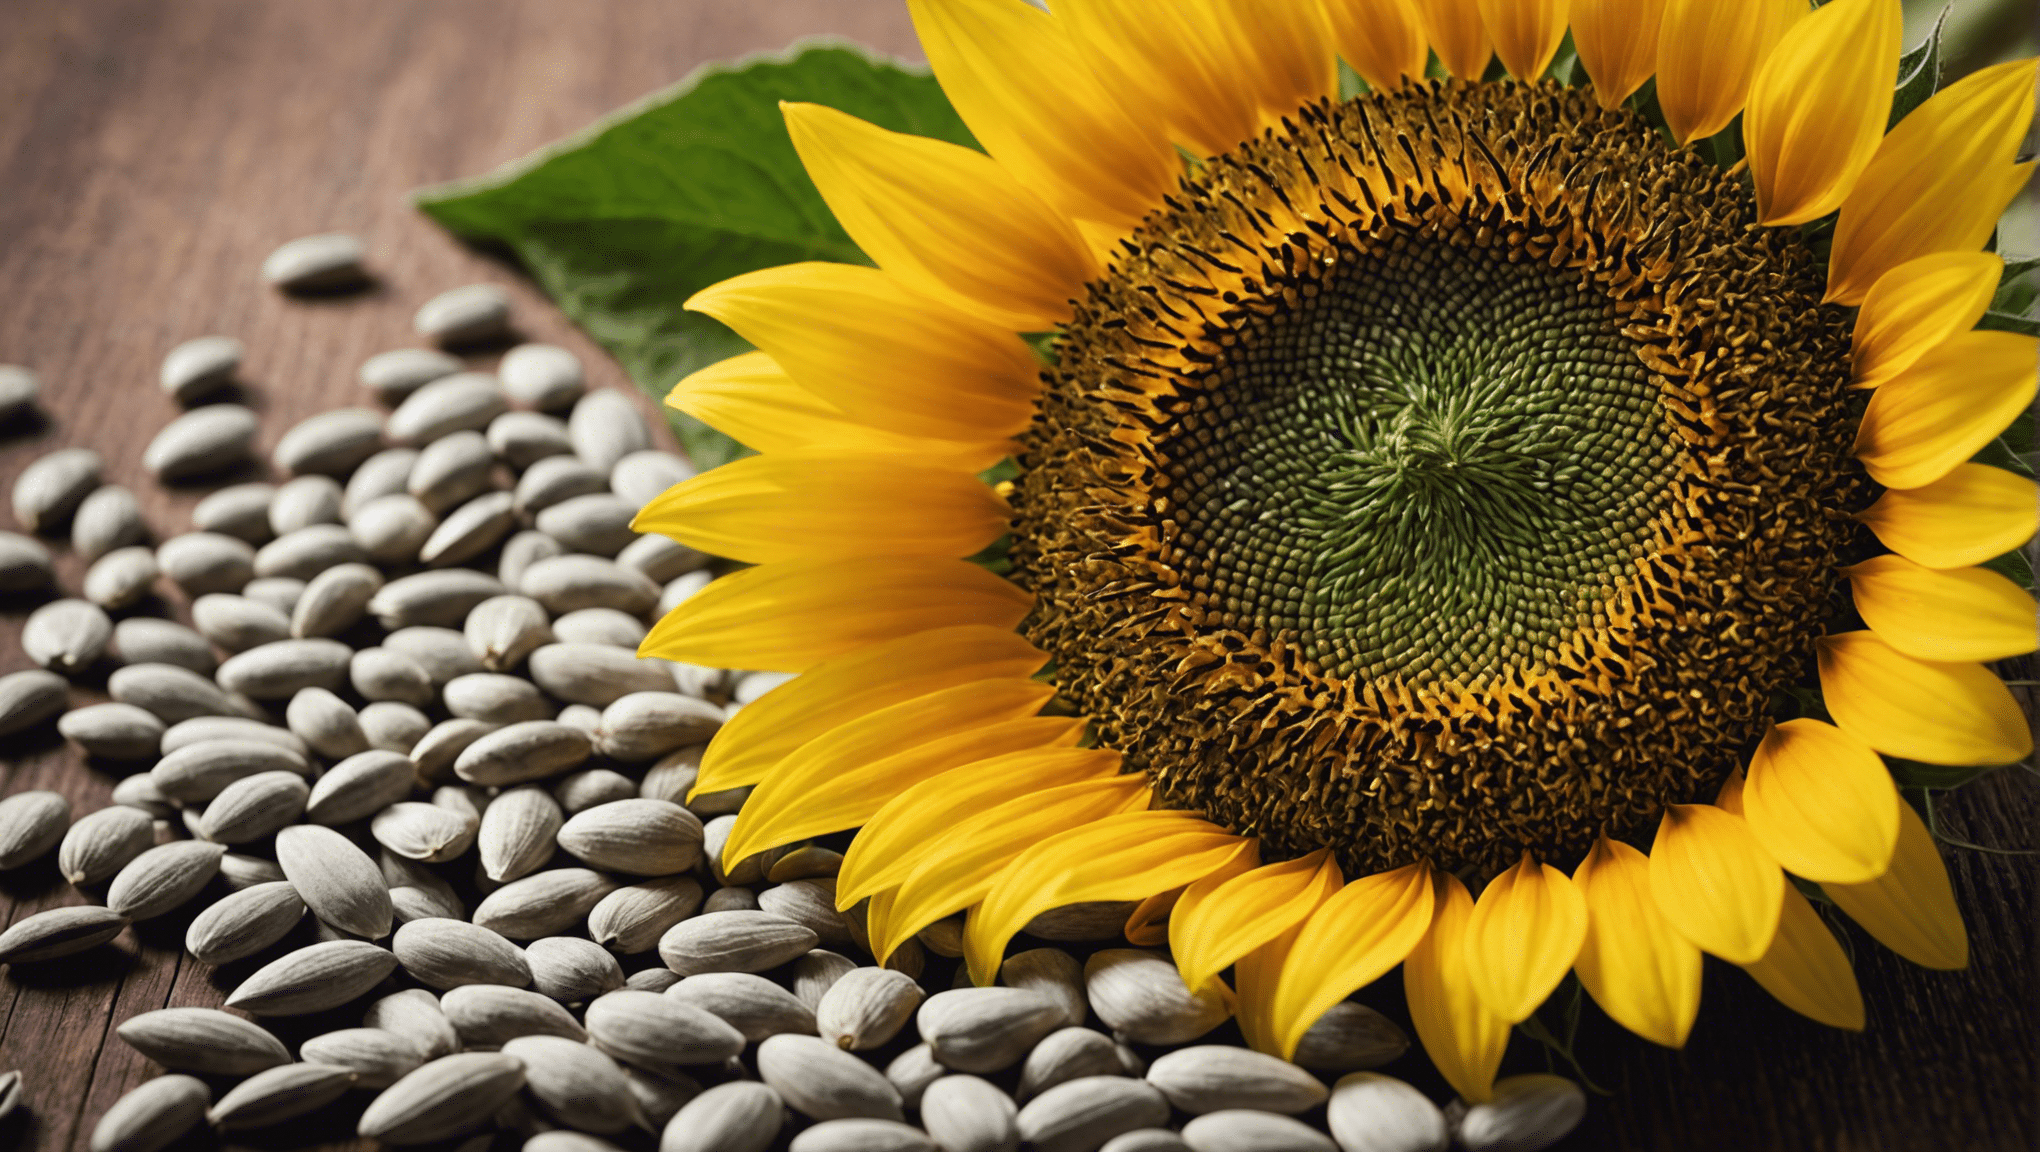 objevte v tomto fascinujícím článku potenciál velkých slunečnicových semínek jako dalšího šílenství v oblasti superpotravin.